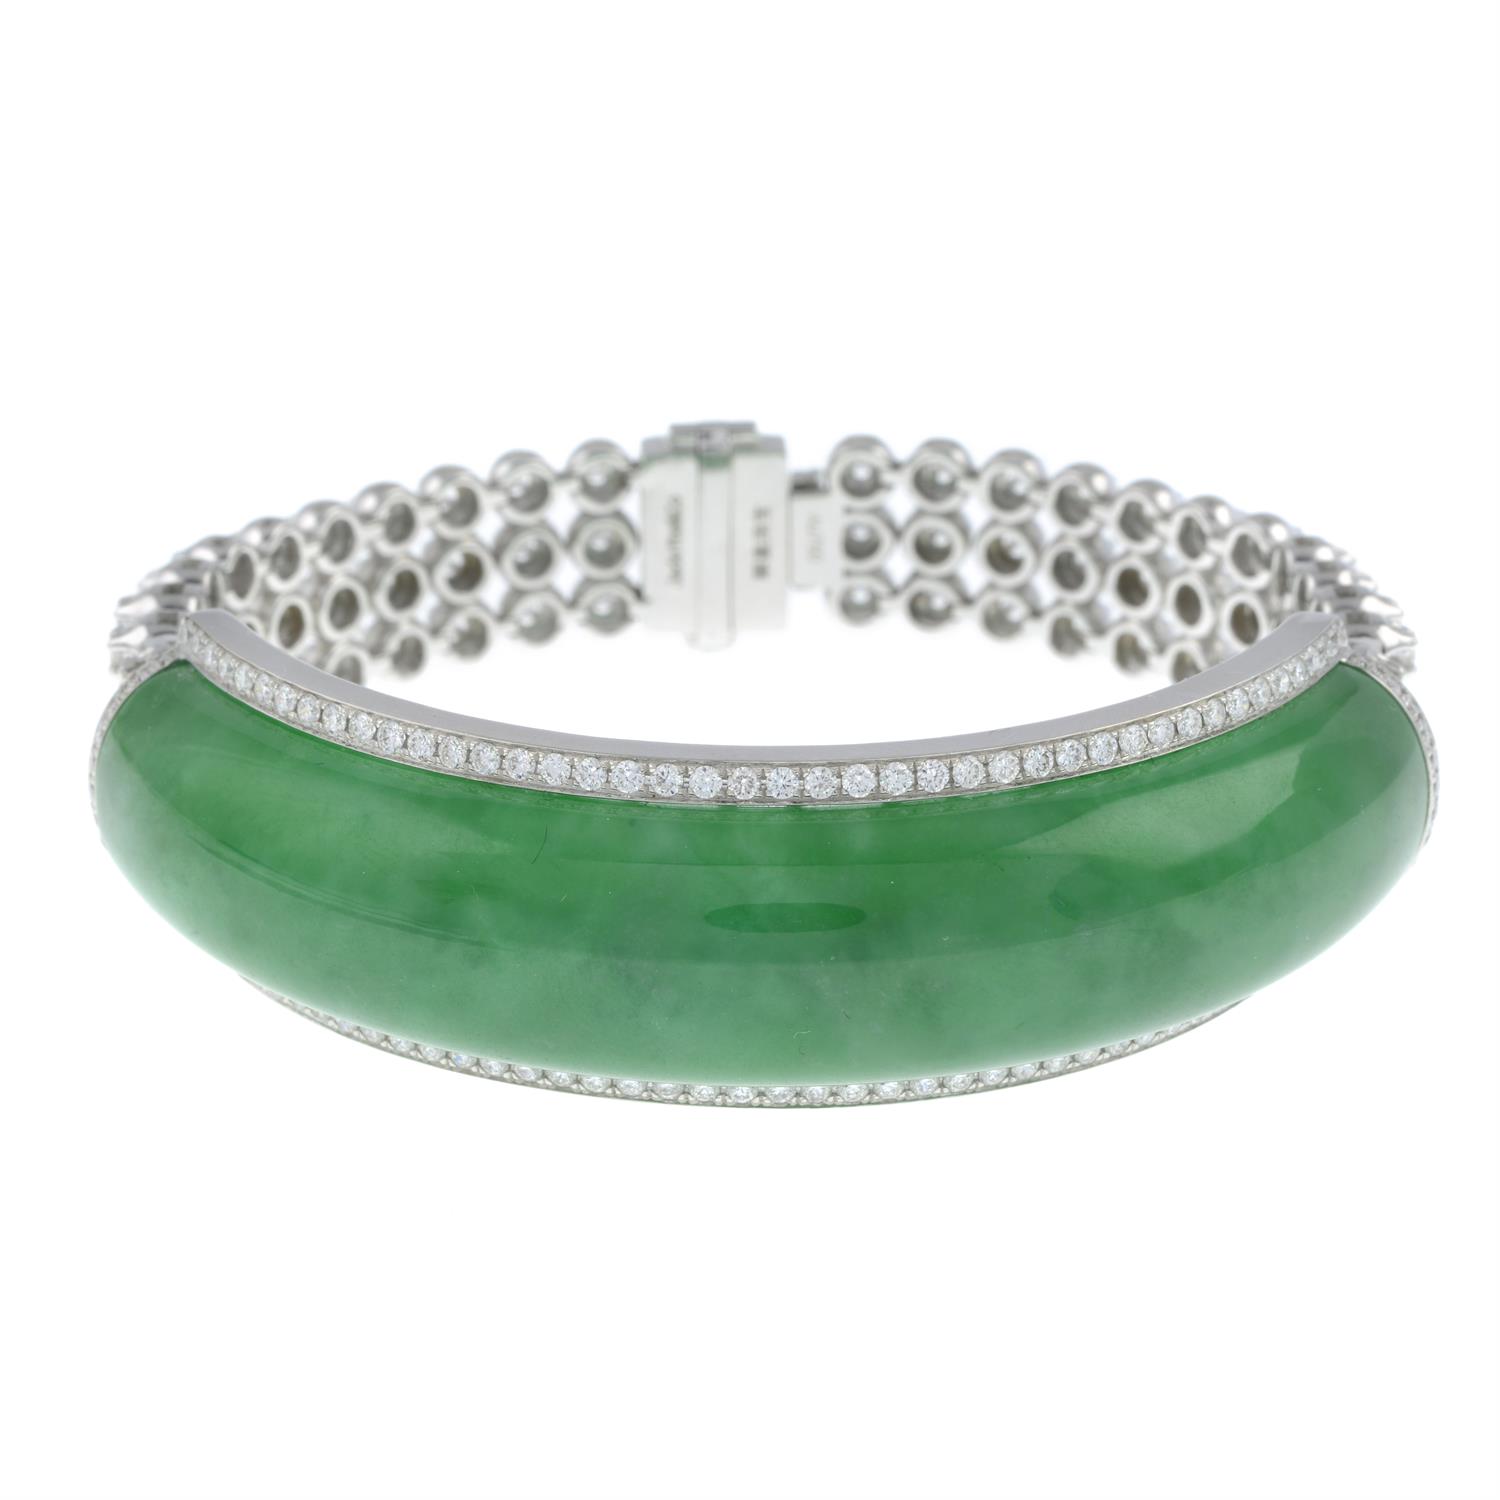 Jade and diamond bracelet, by Jadeite & Co. - Image 2 of 4